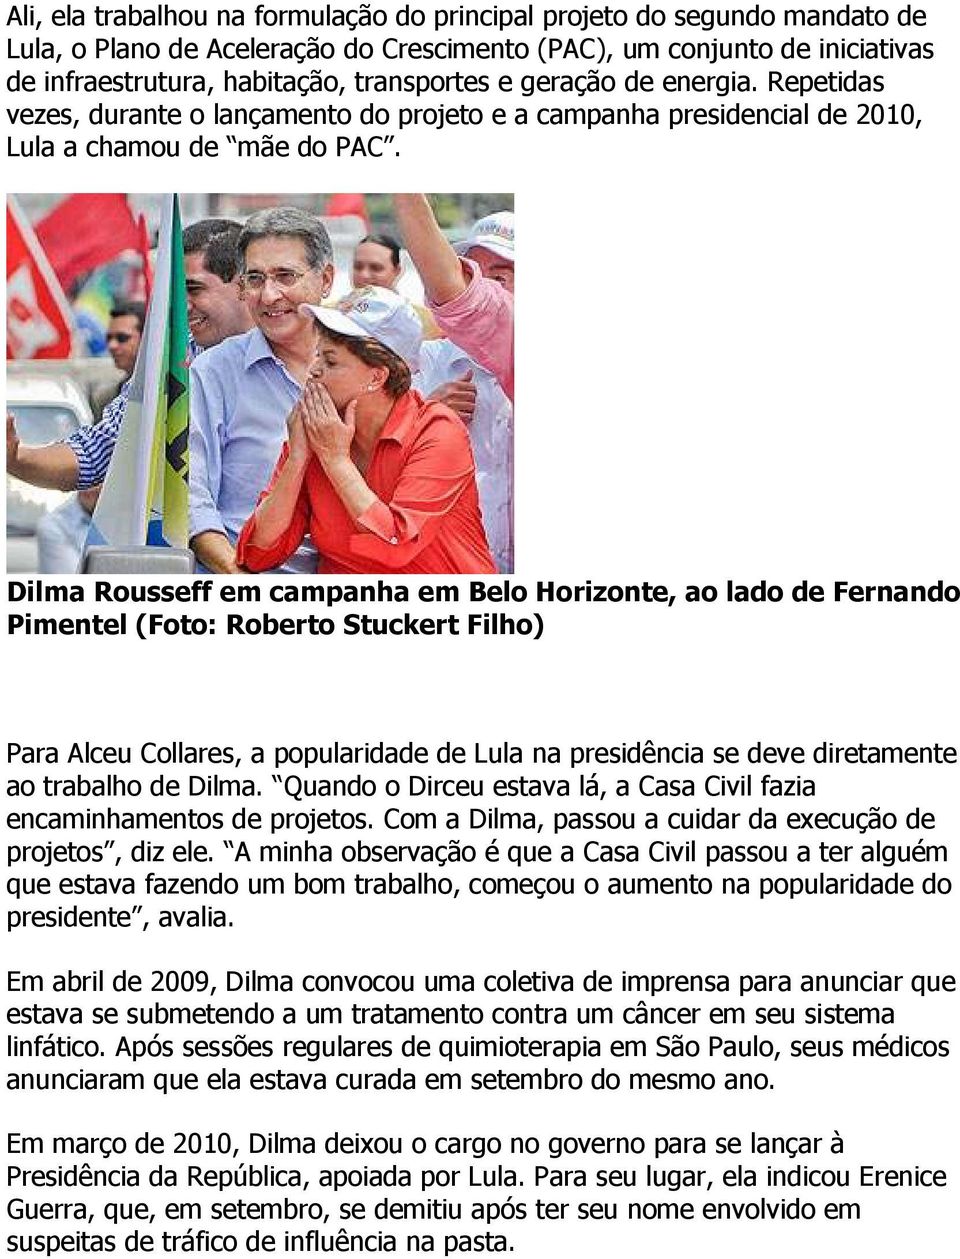 Dilma Rousseff em campanha em Belo Horizonte, ao lado de Fernando Pimentel (Foto: Roberto Stuckert Filho) Para Alceu Collares, a popularidade de Lula na presidência se deve diretamente ao trabalho de